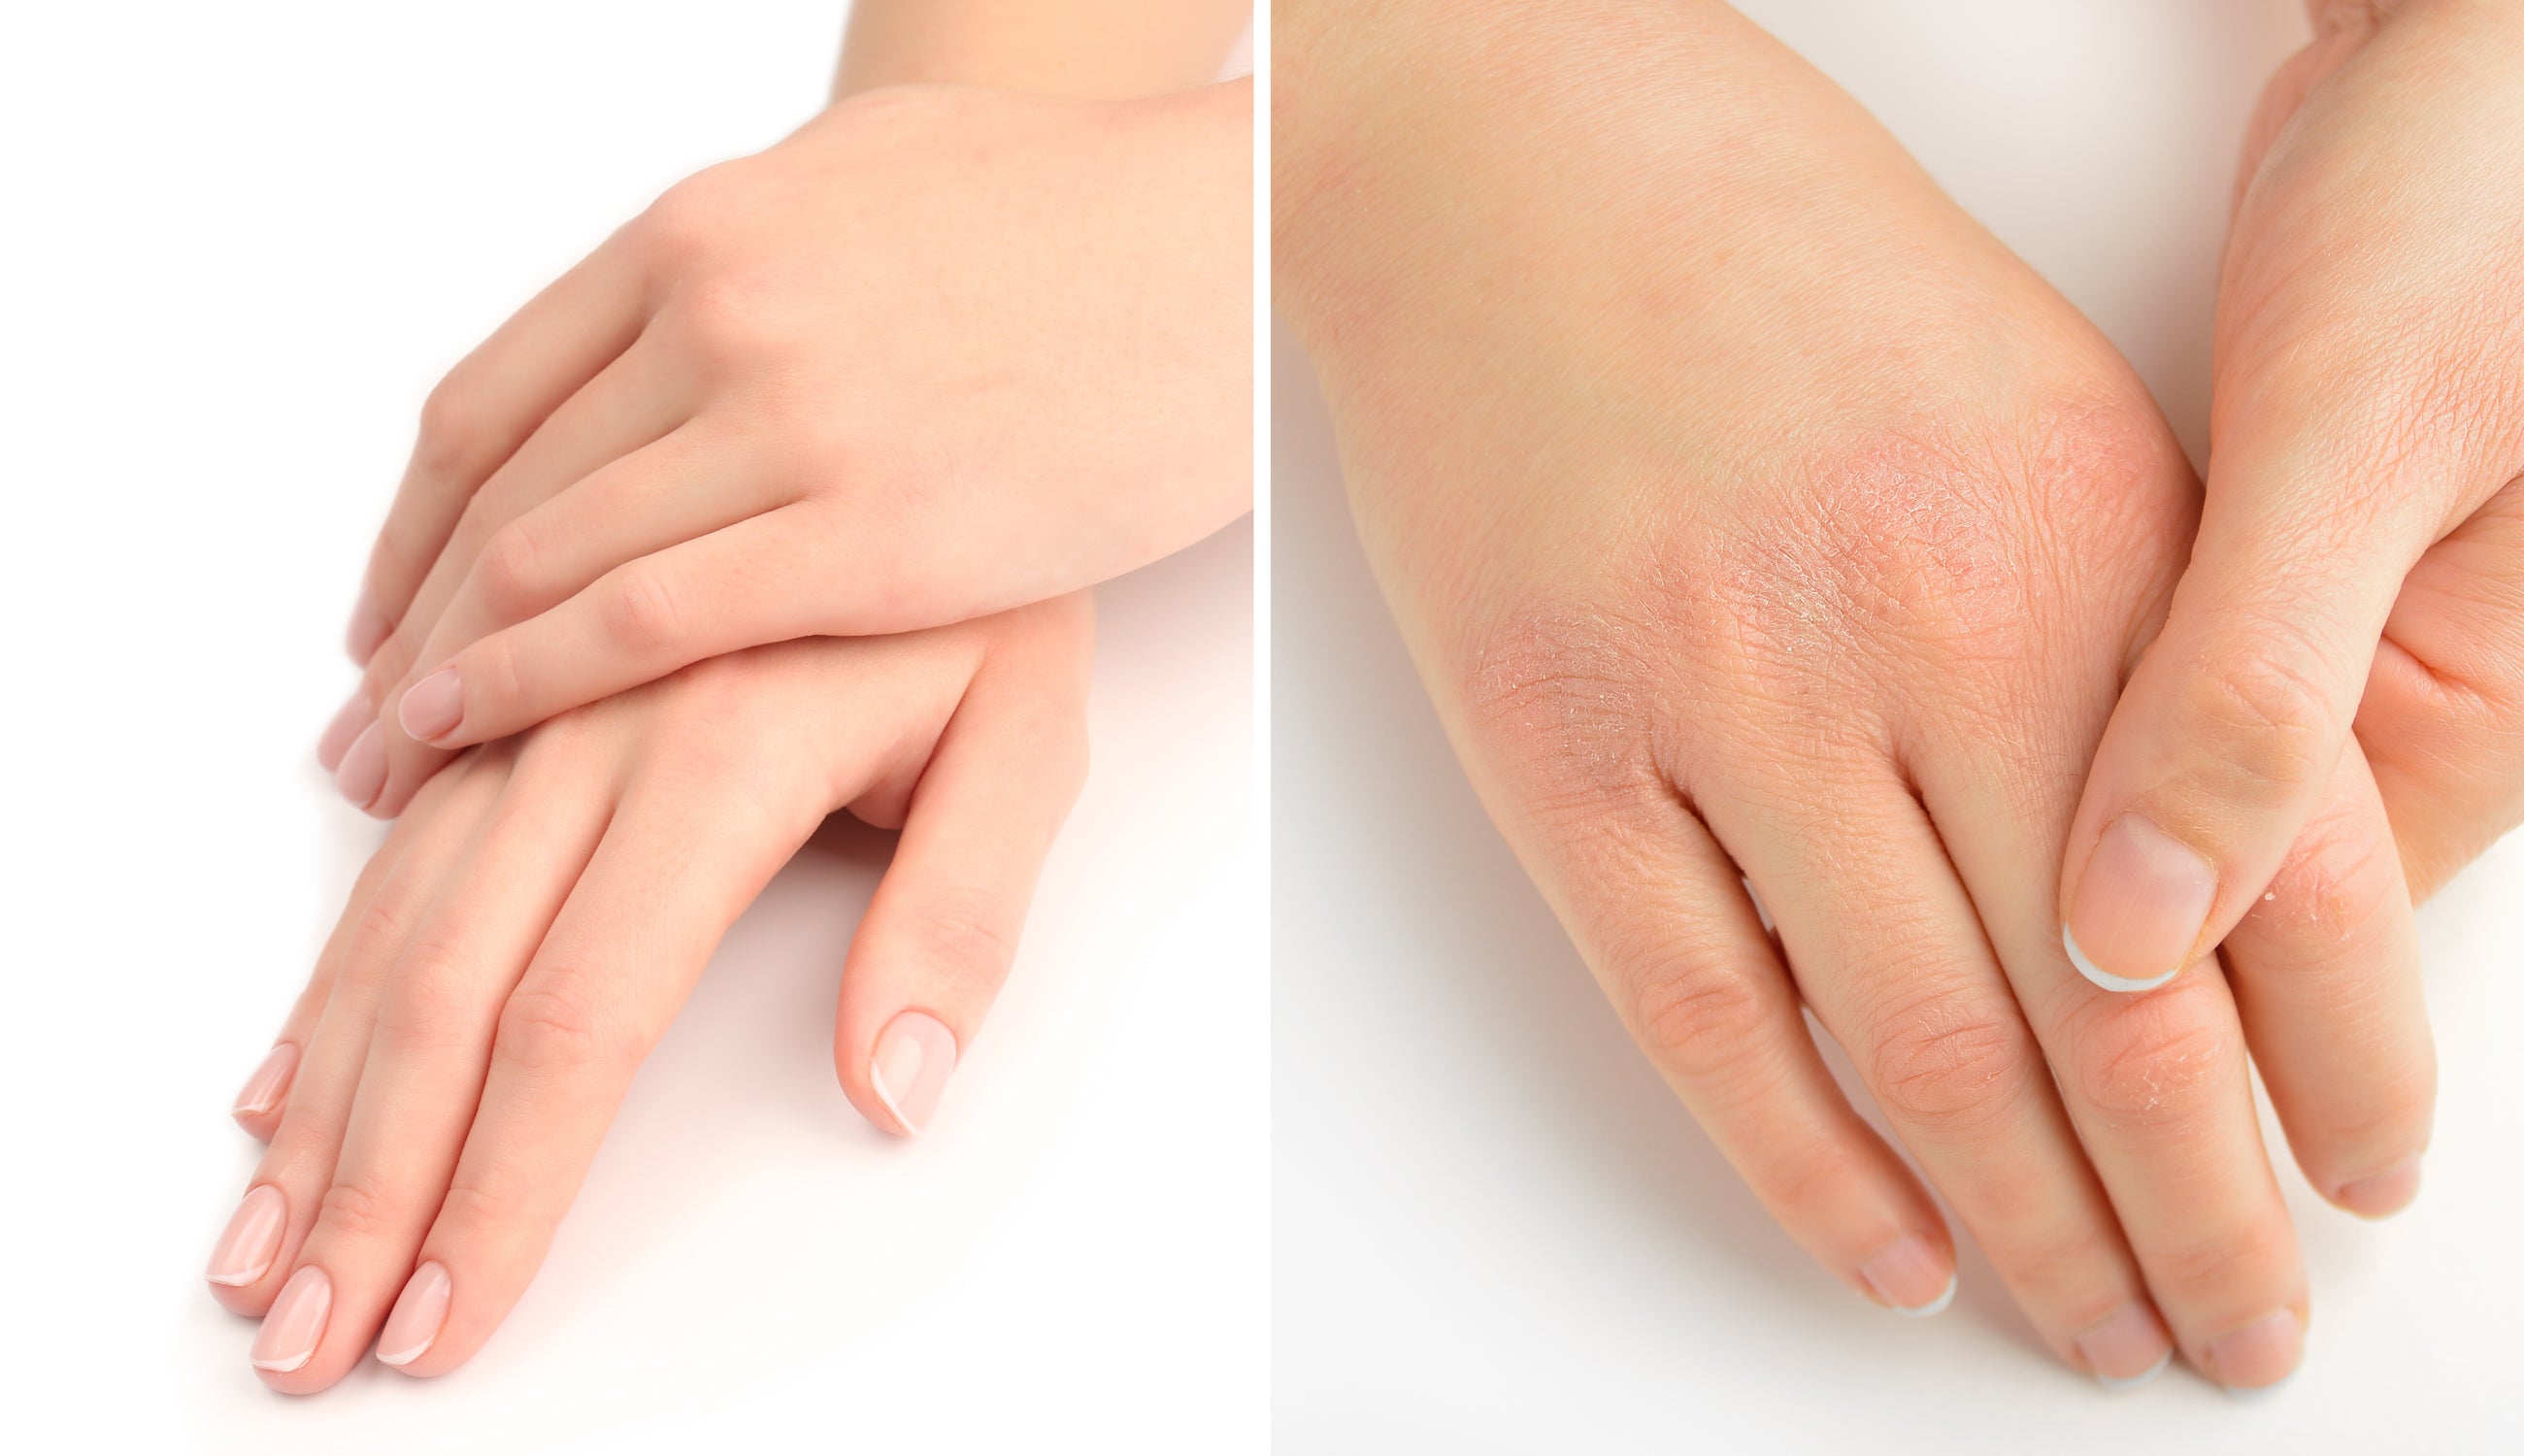 Dry-Skin-Versus-Moist-Hands